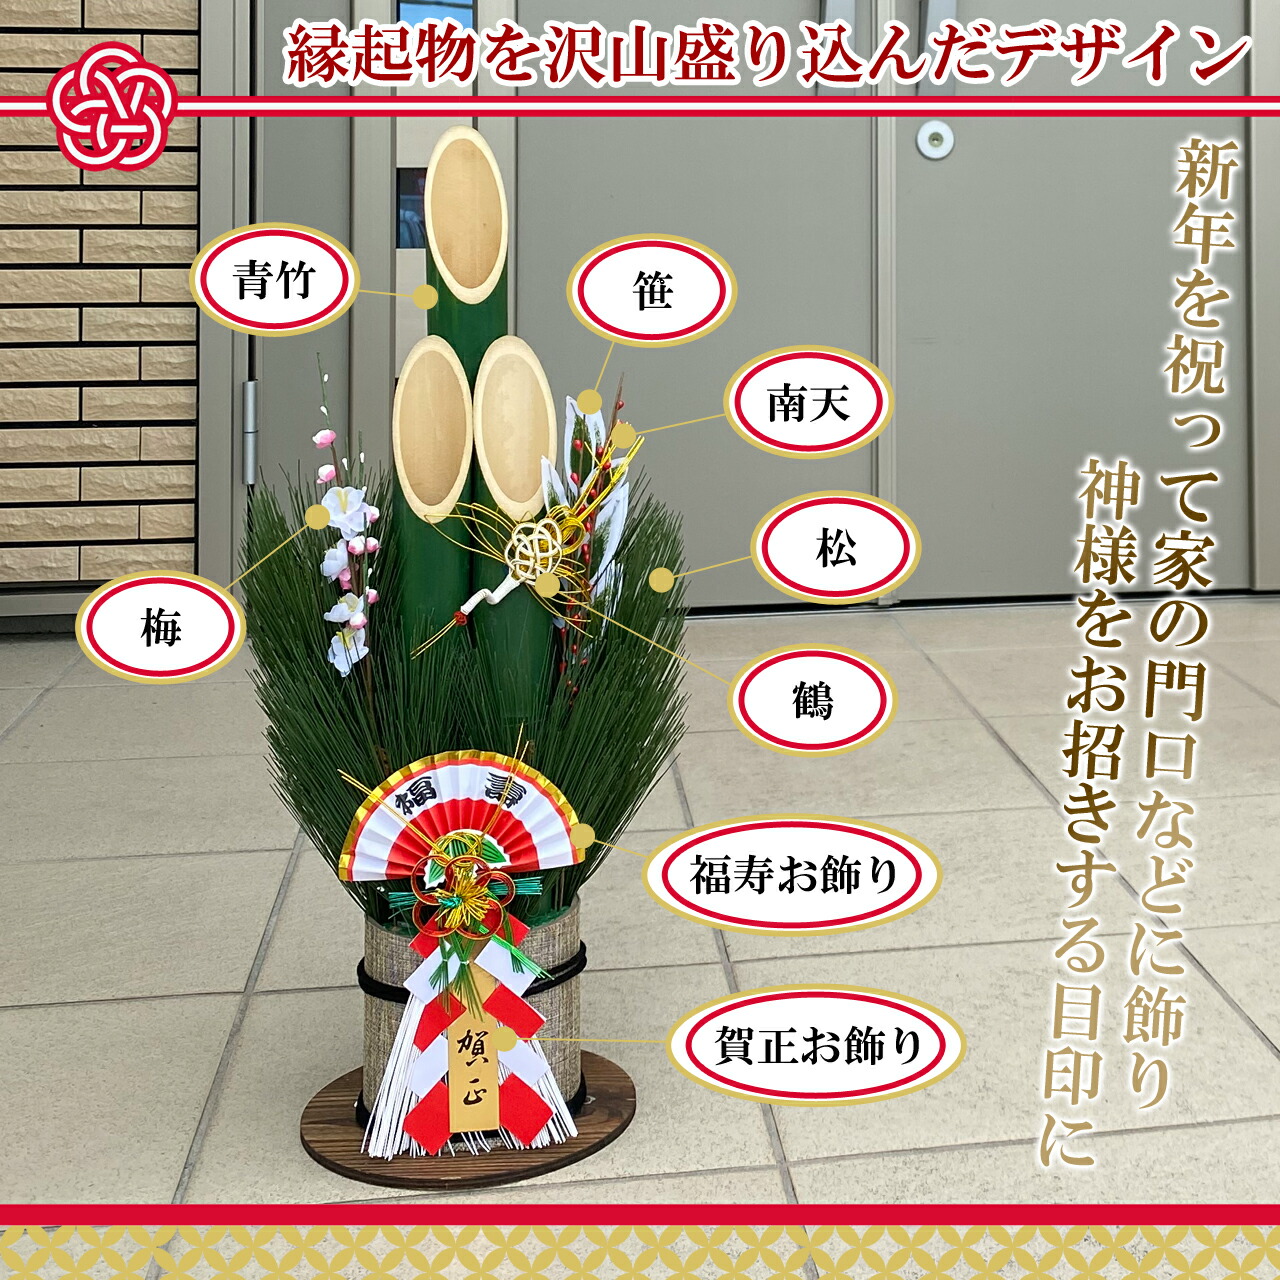 門松 60cm 一対 2本組 玄関 竹 正月 飾り 縁起物